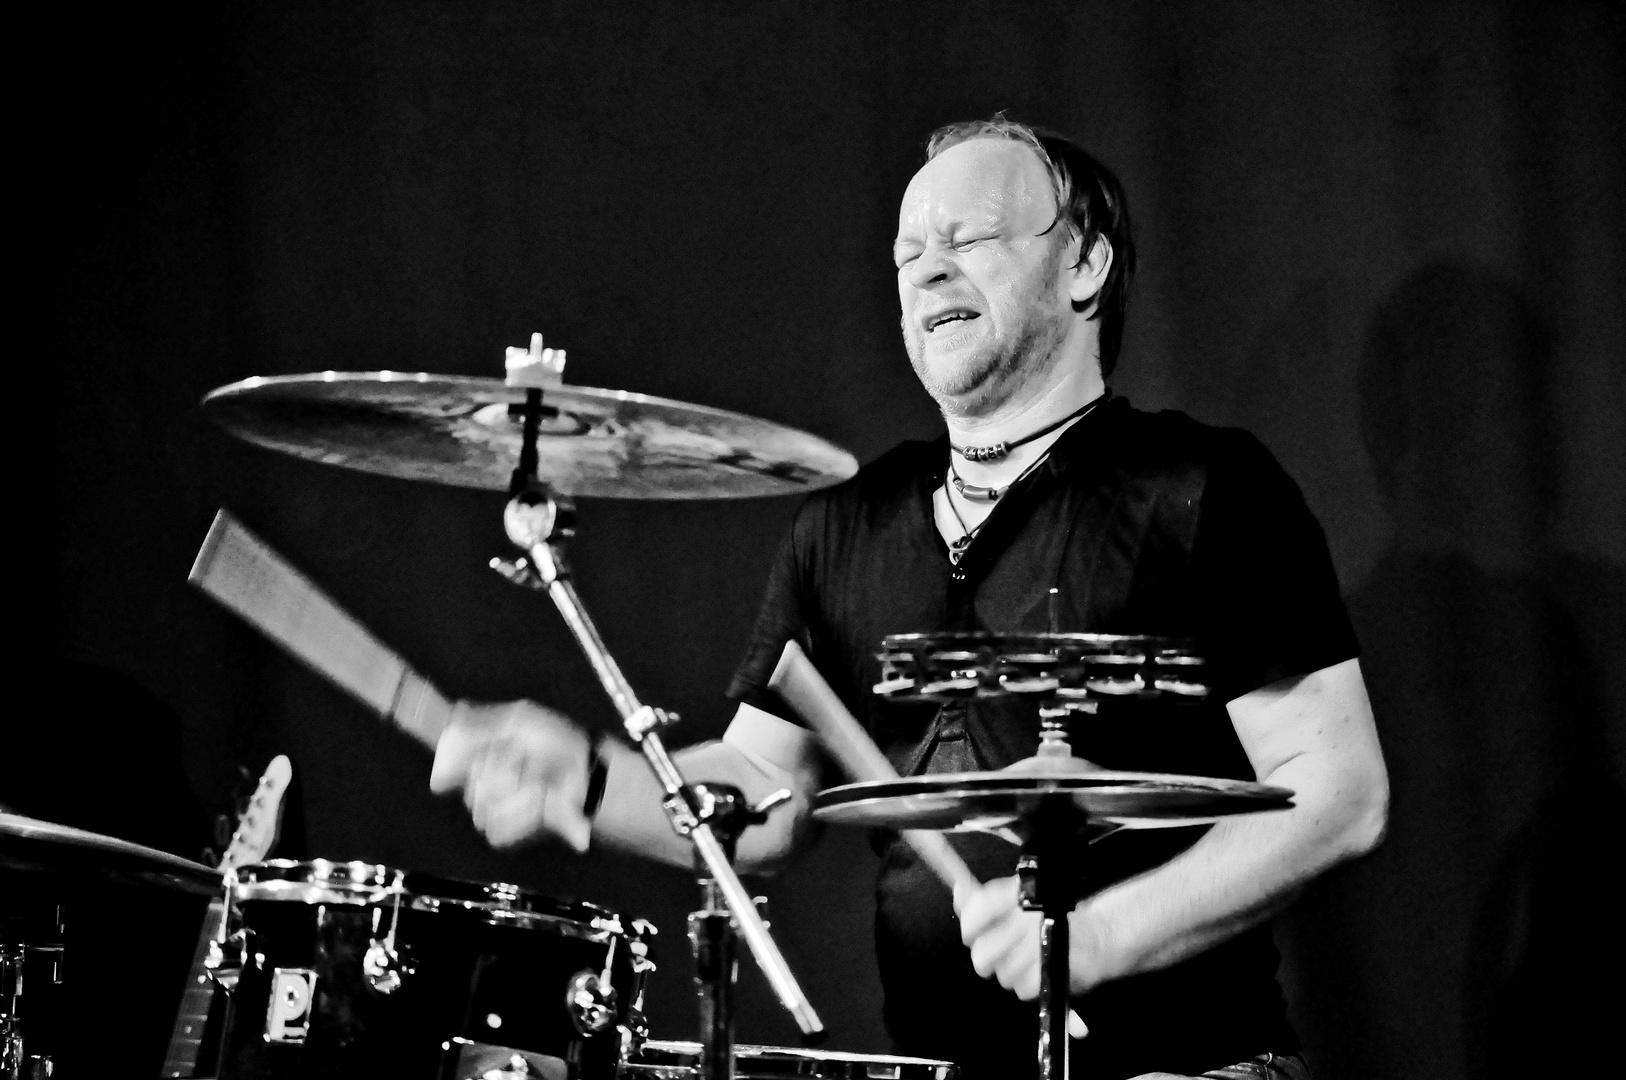 Mirko Kirch am Schlagzeug